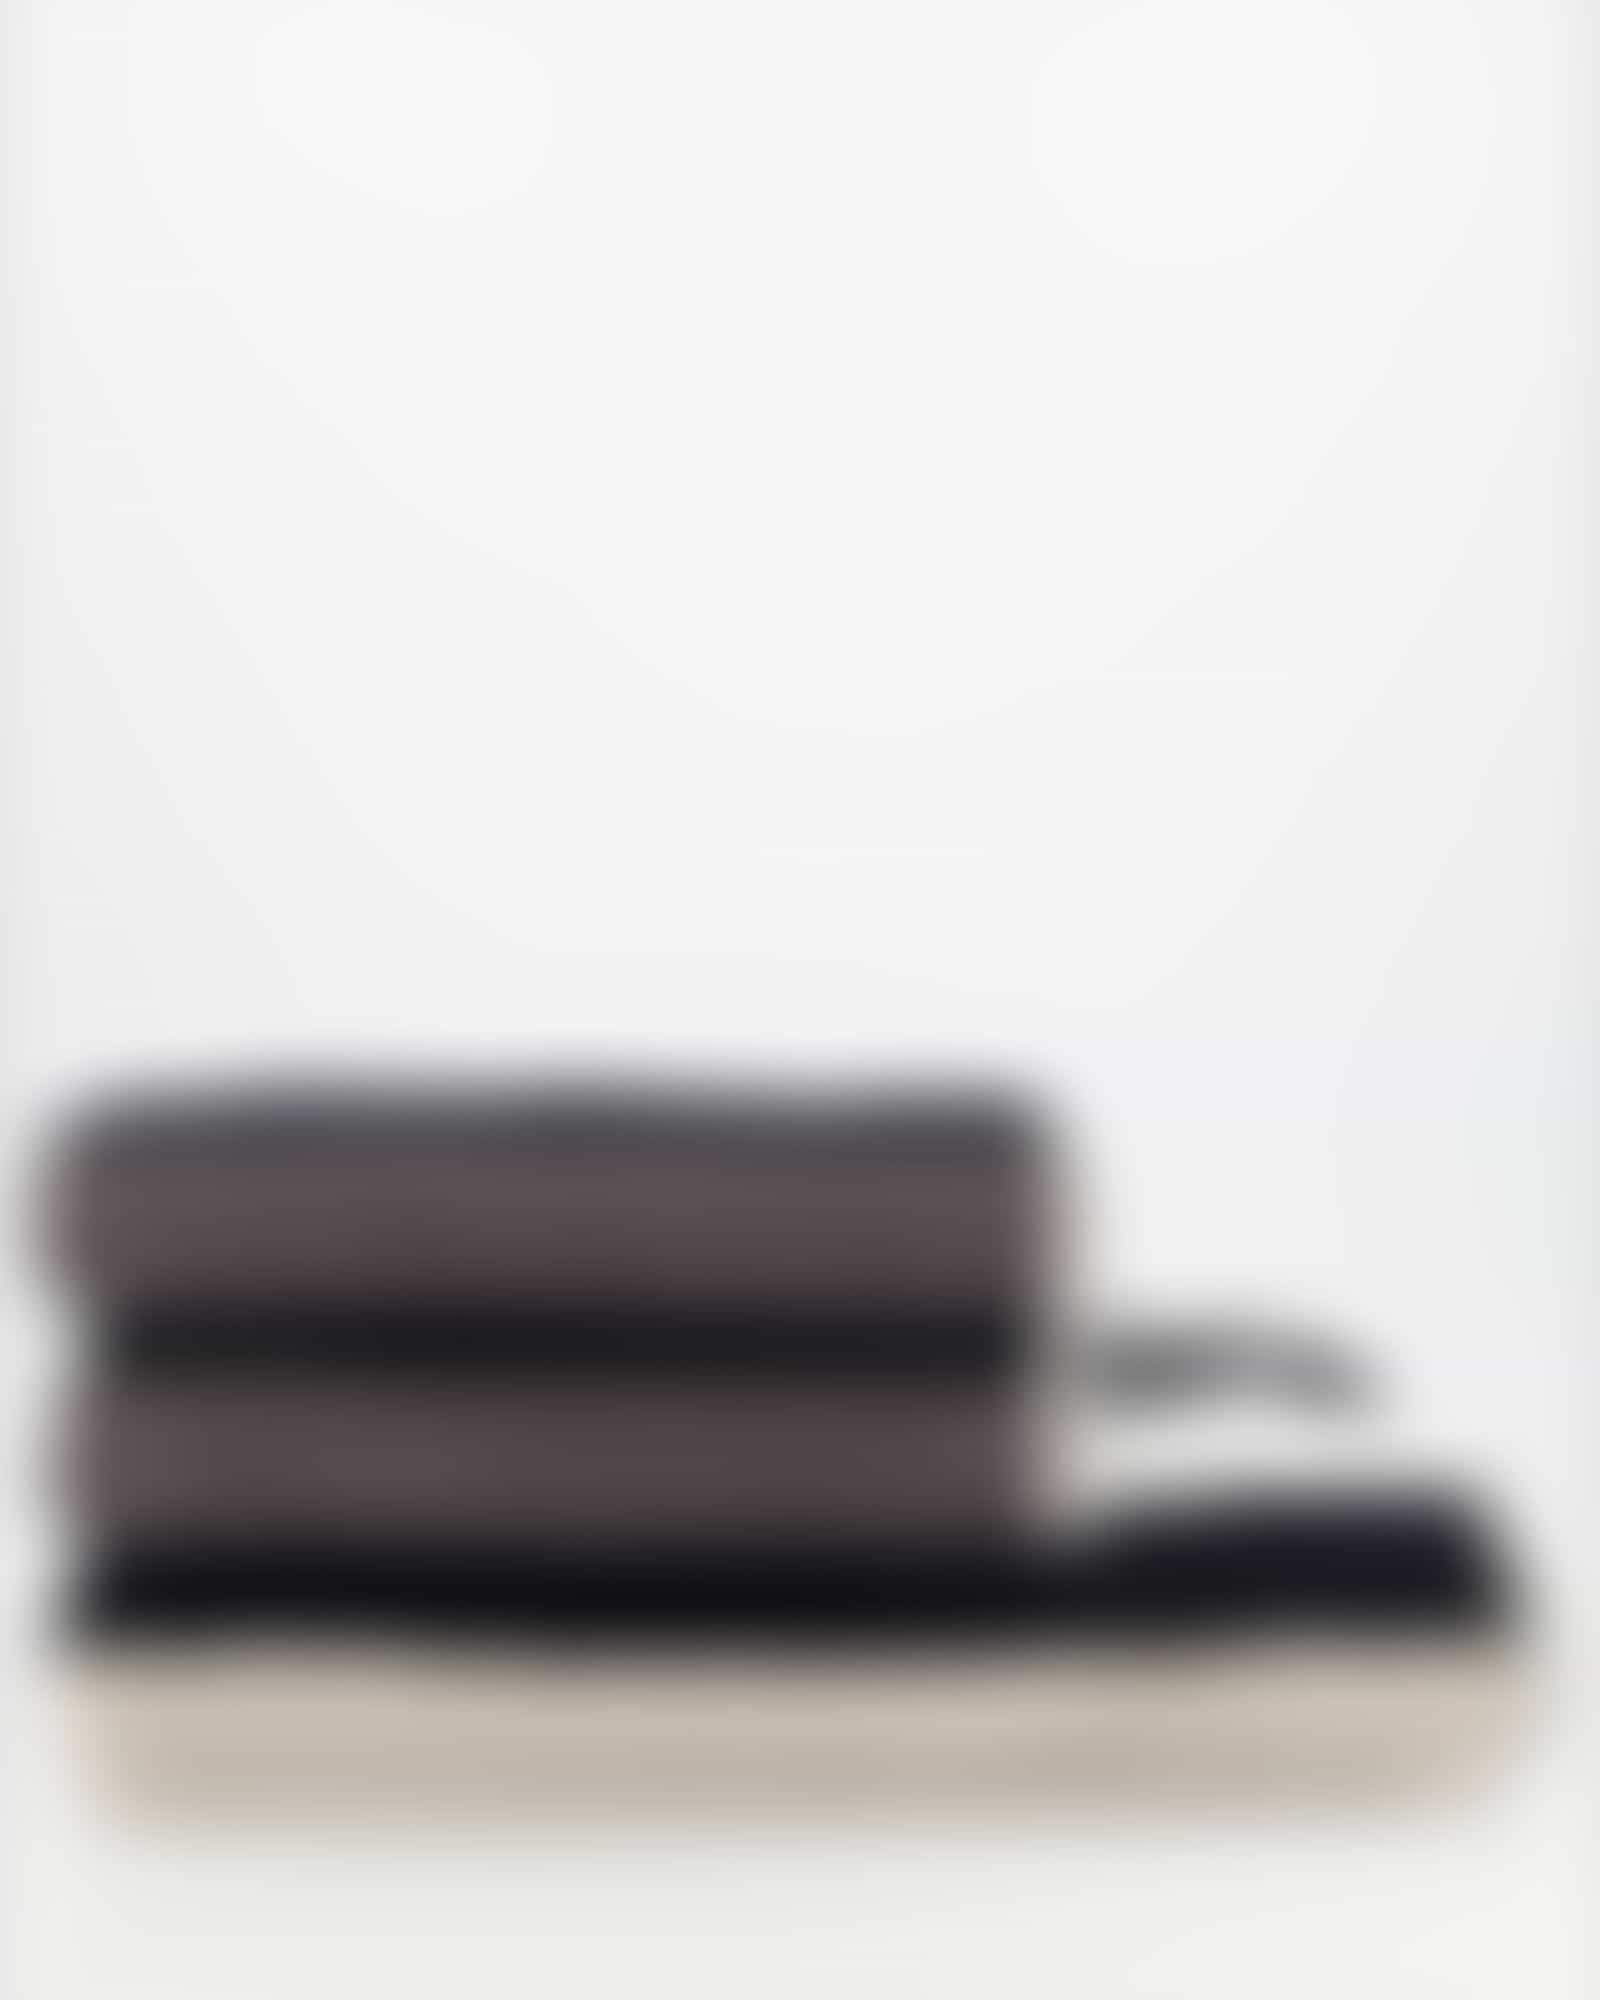 JOOP Tone Streifen 1690 - Farbe: Platin - 77 - Duschtuch 80x150 cm